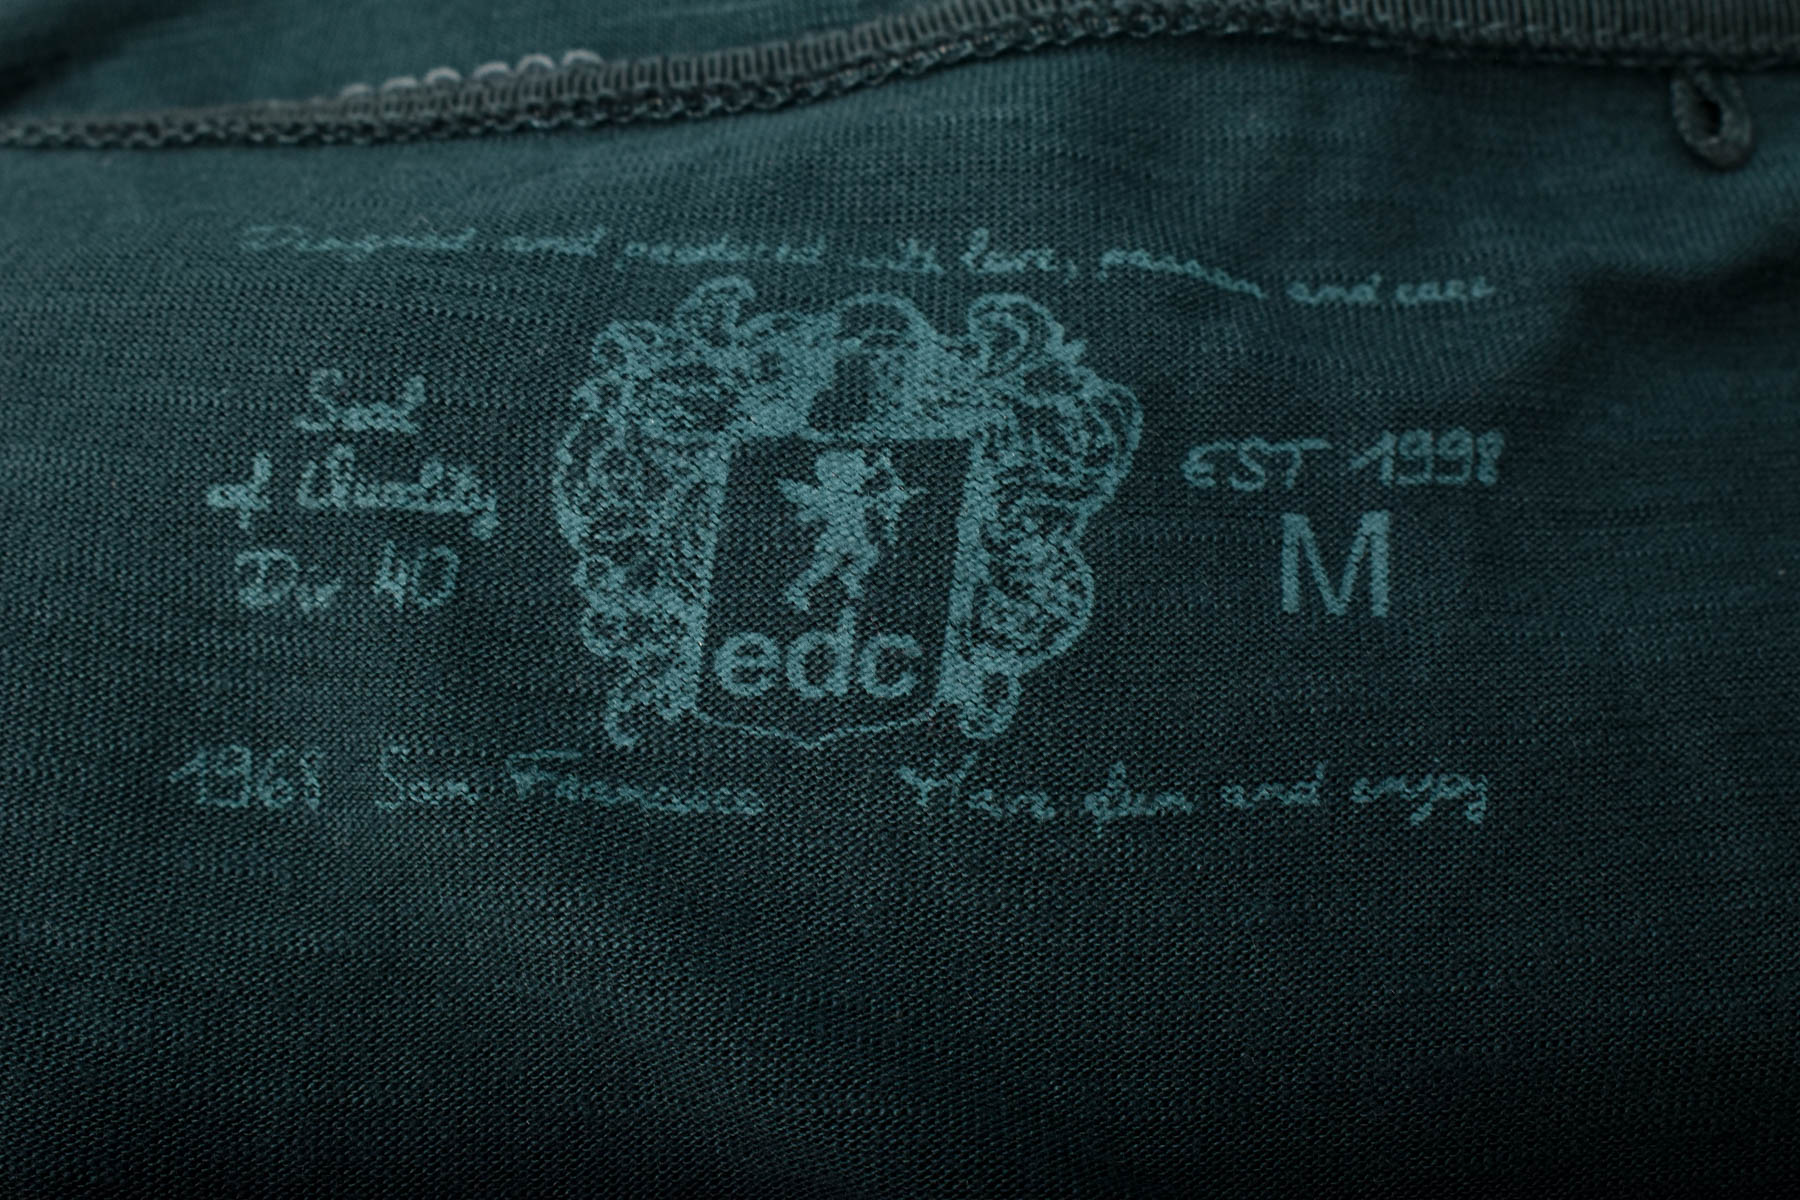 Bluza de damă - Edc - 2